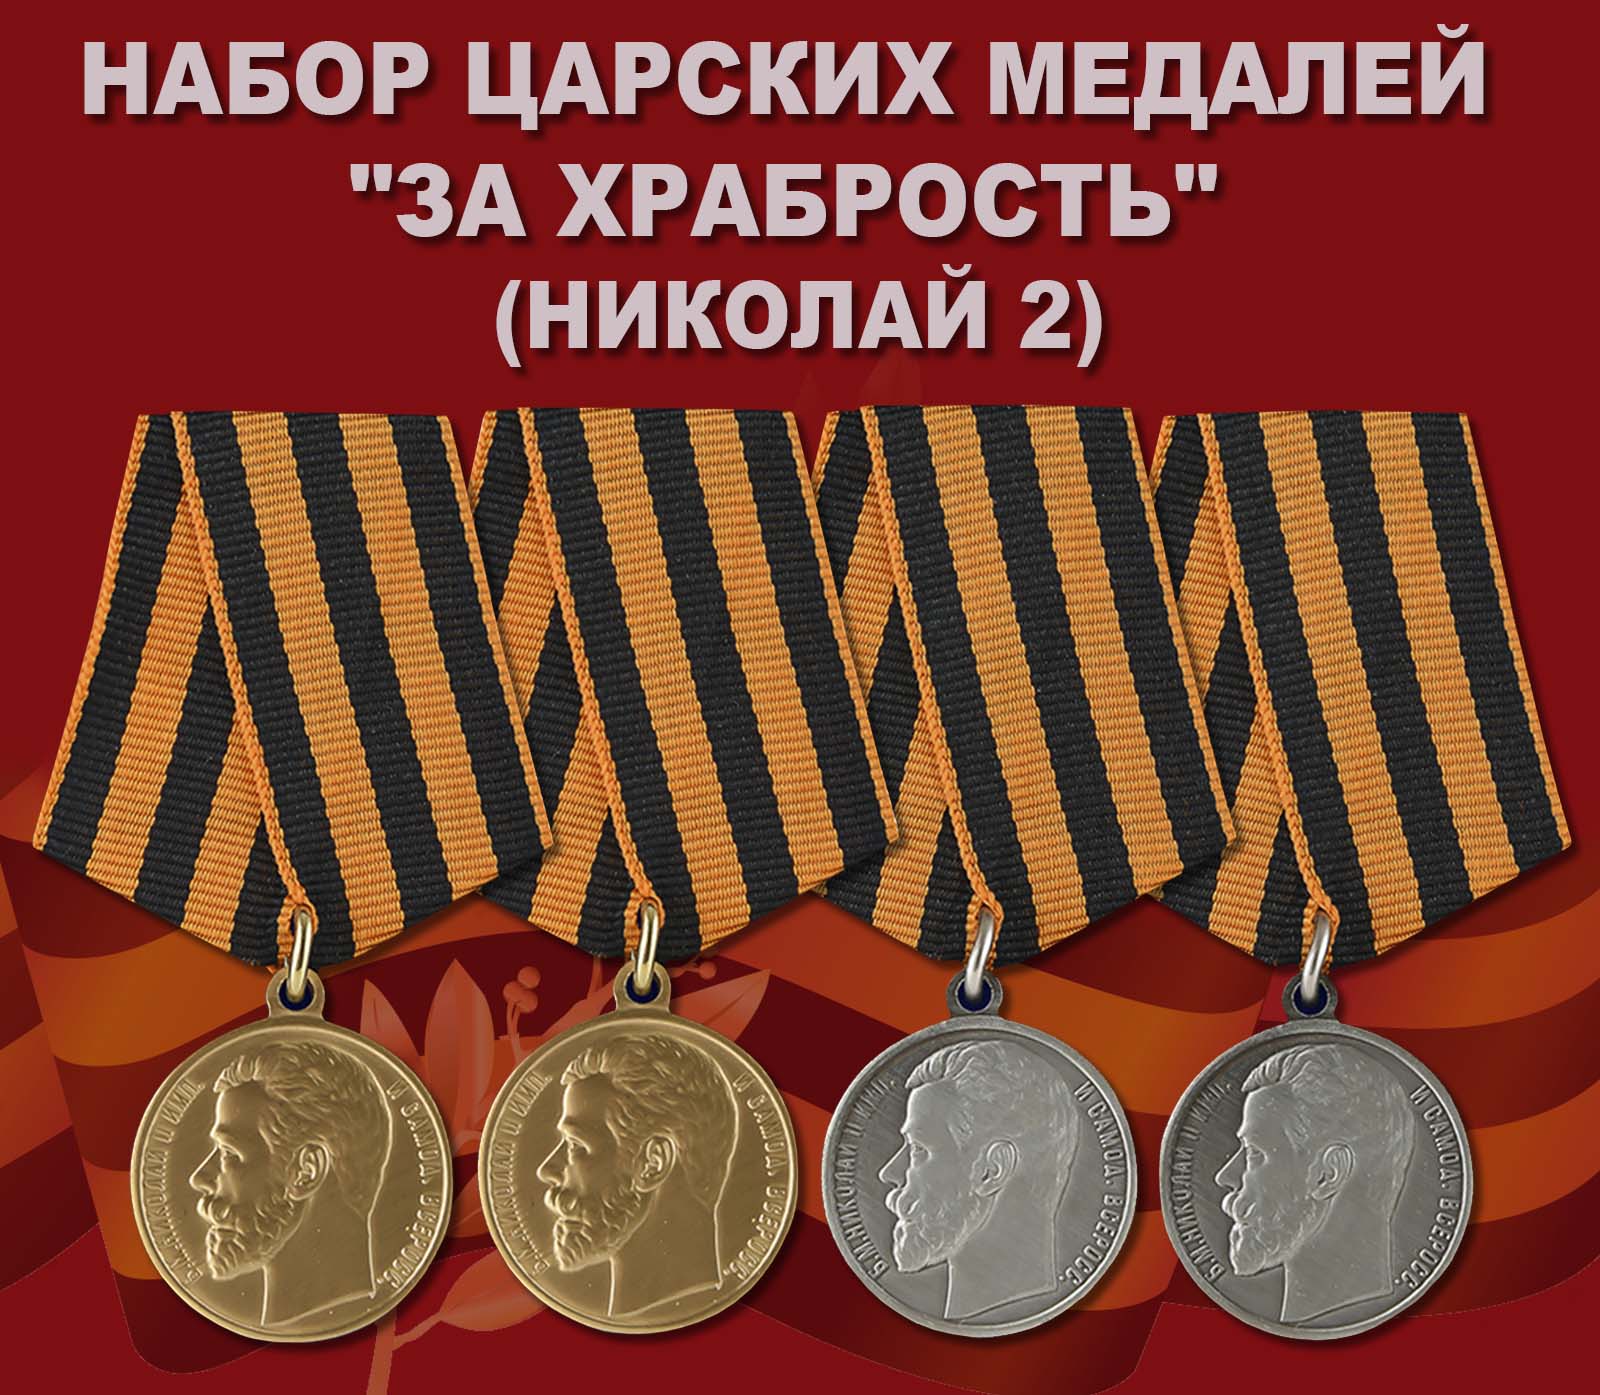 Купить комплект царских медалей "За храбрость" (Николай II)